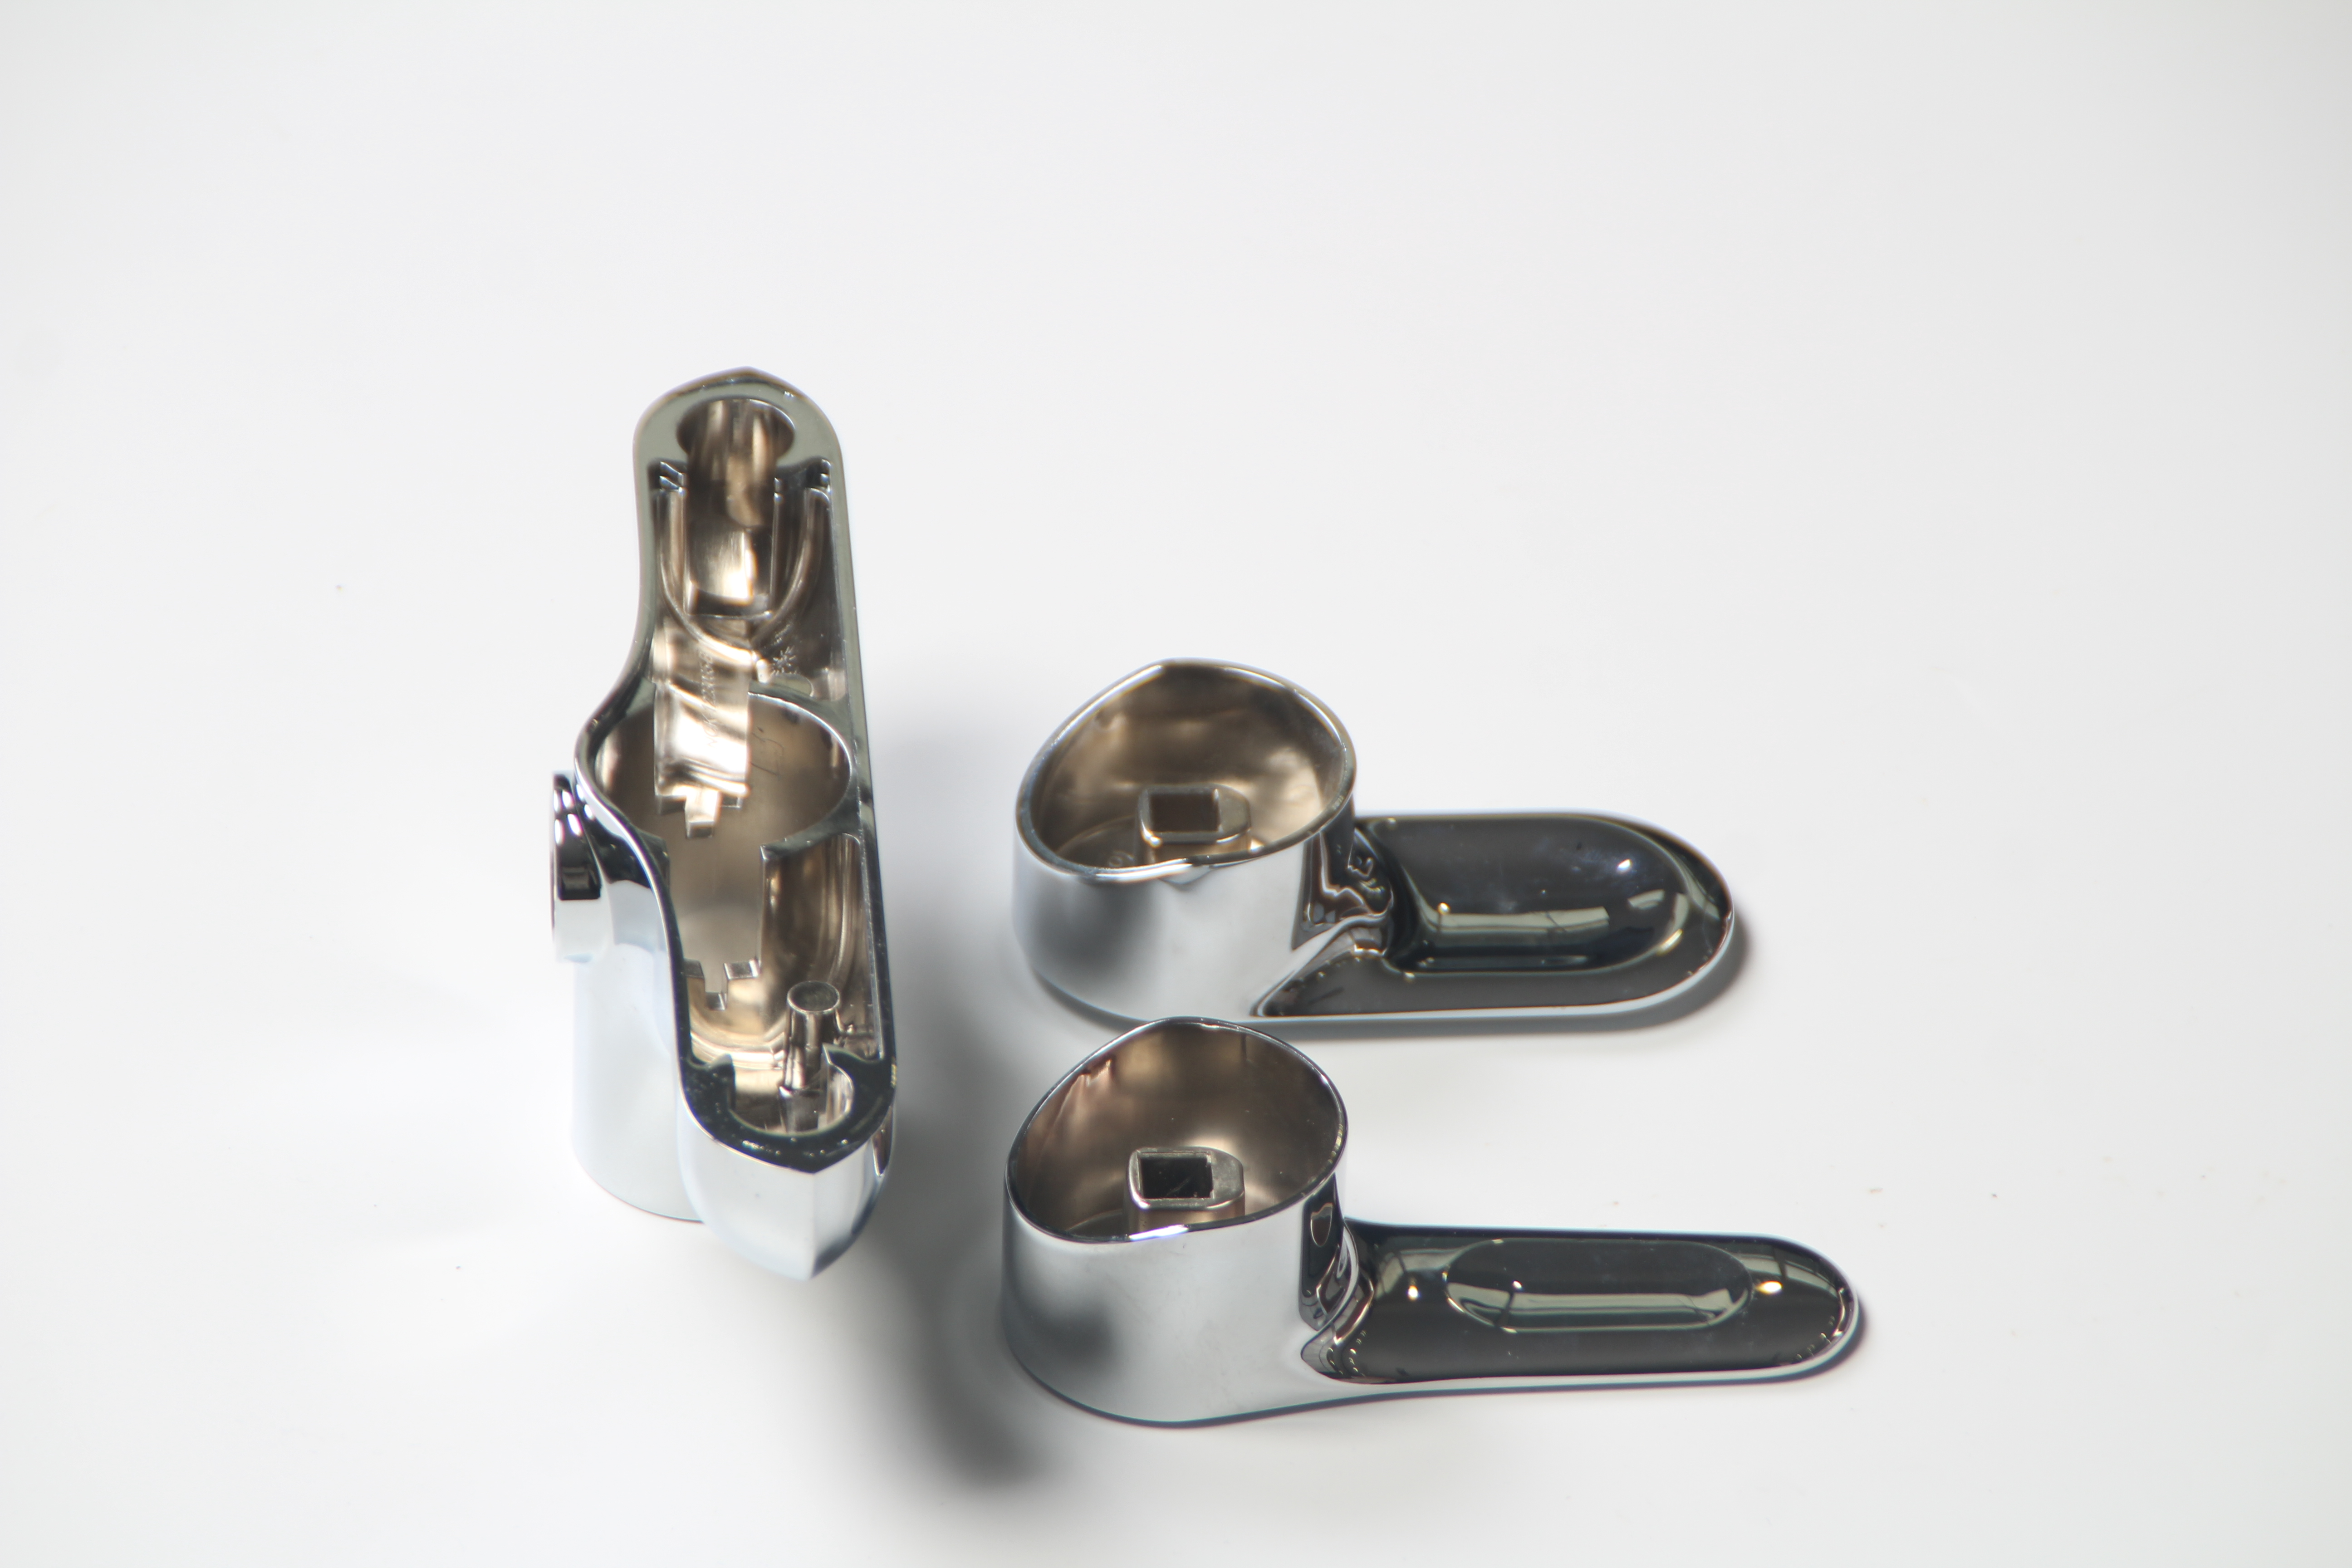 Faucet handle zinc alloy die casting parts